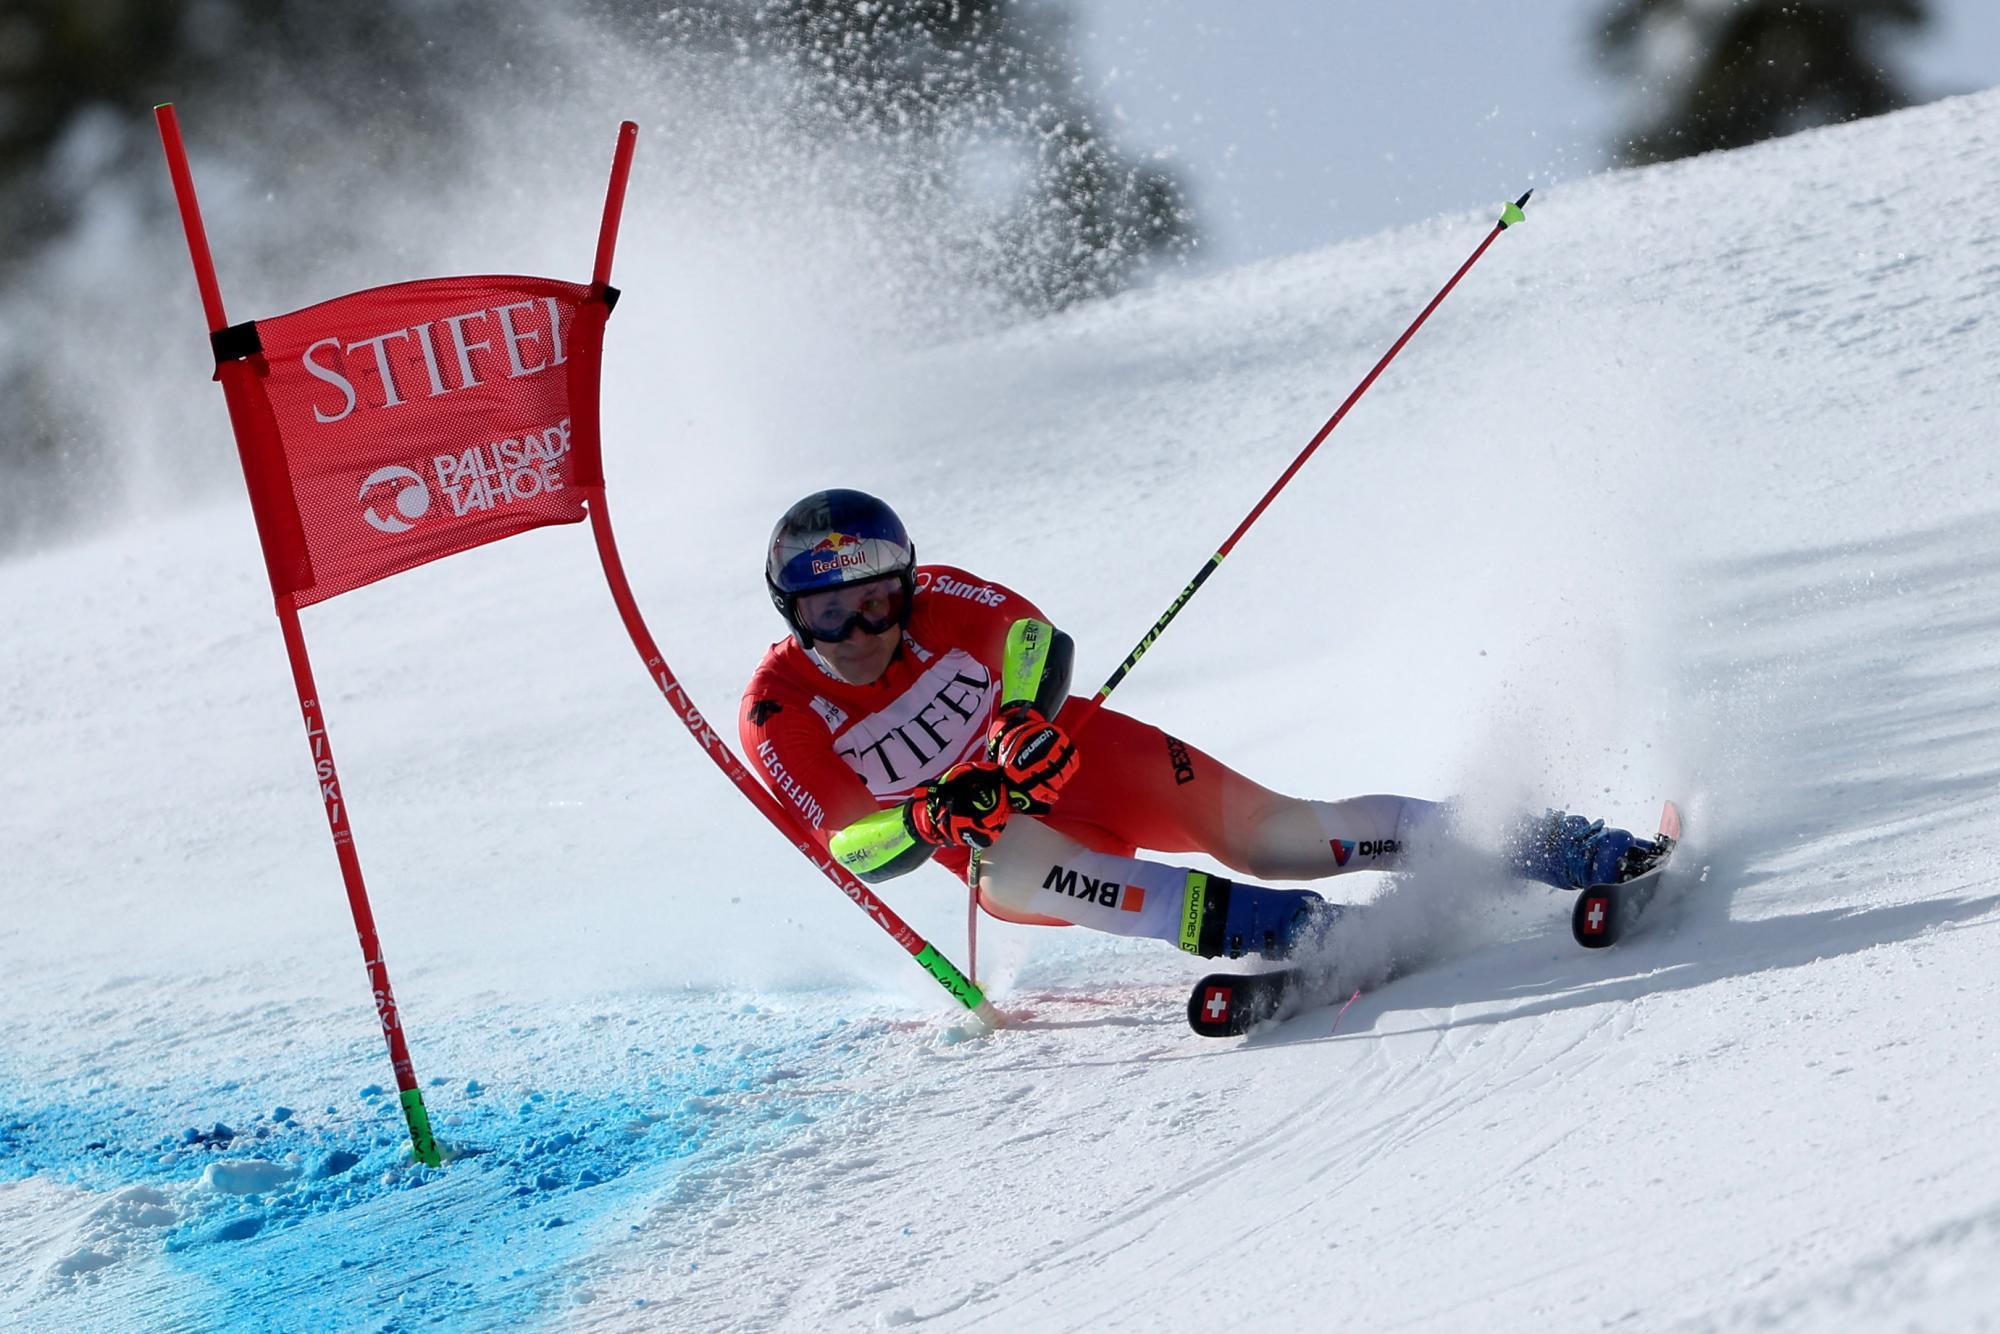 Ski alpin: RTL-Weltmeister Odermatt in Palisades Tahoe voran